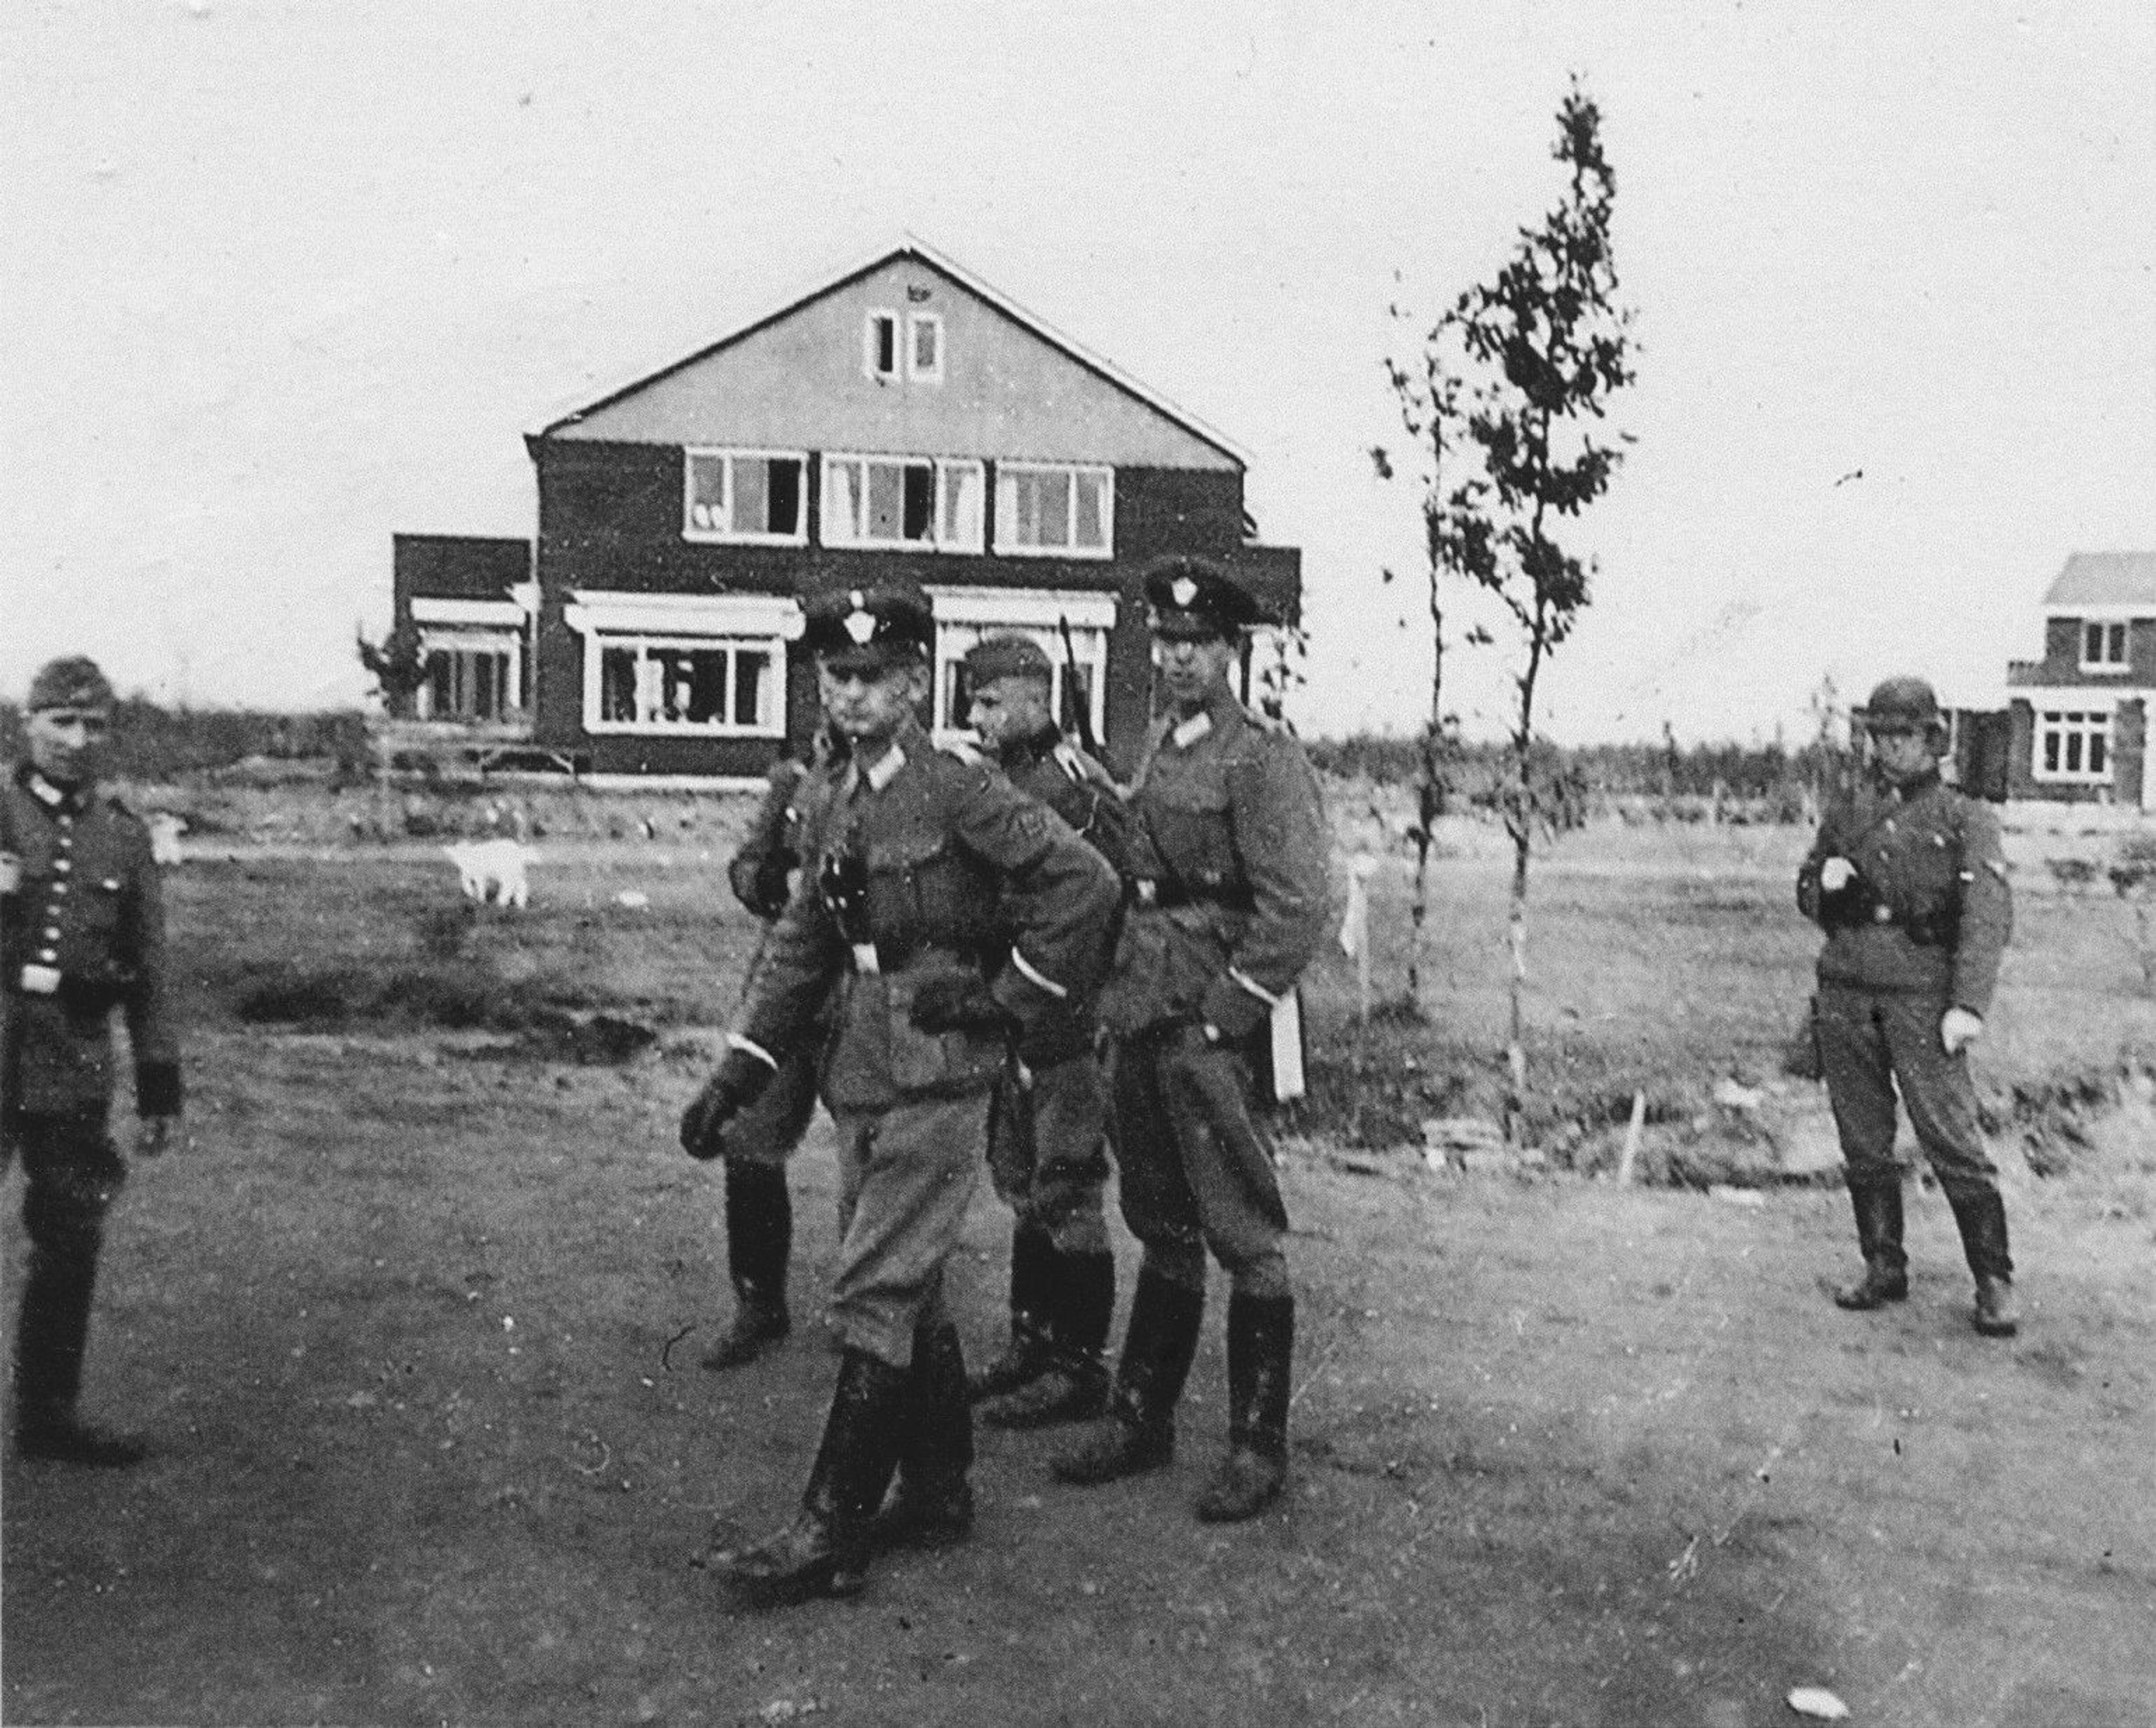 Das Haus des Kommandanten und die Mitglieder des Polizeibataillons Bremen, Westerbork, NL, 02/10/1942.